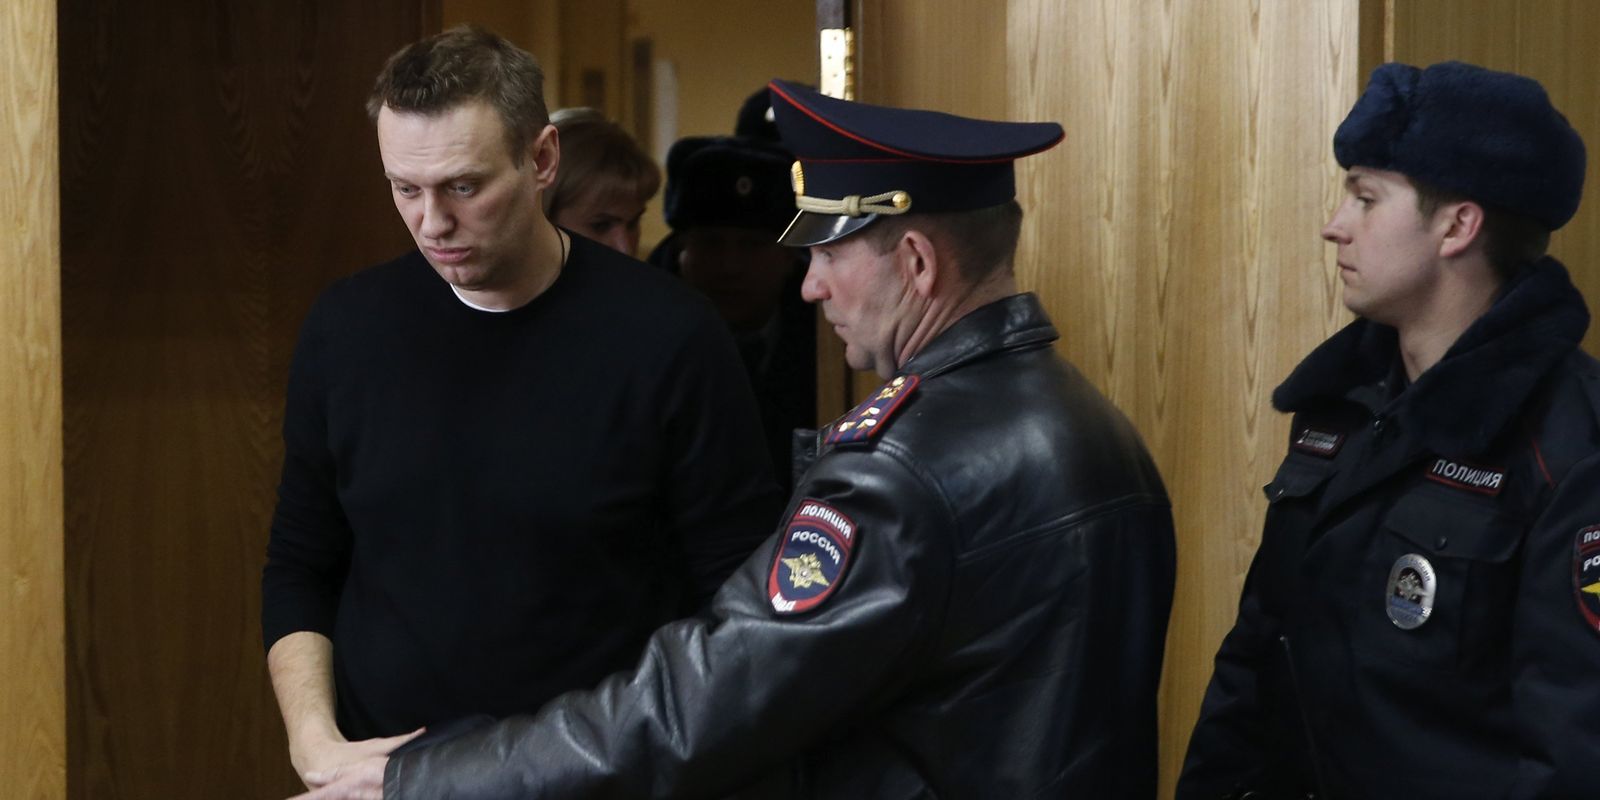 Moscou (Rússia) - Líder opositor russo Alexei Navalny (à esquerda) se dirige à sala para receber o veredito do tribunal do distrito de Tverskoy, em Moscou, Rússia, um dia após ser preso em uma manifestação da oposição